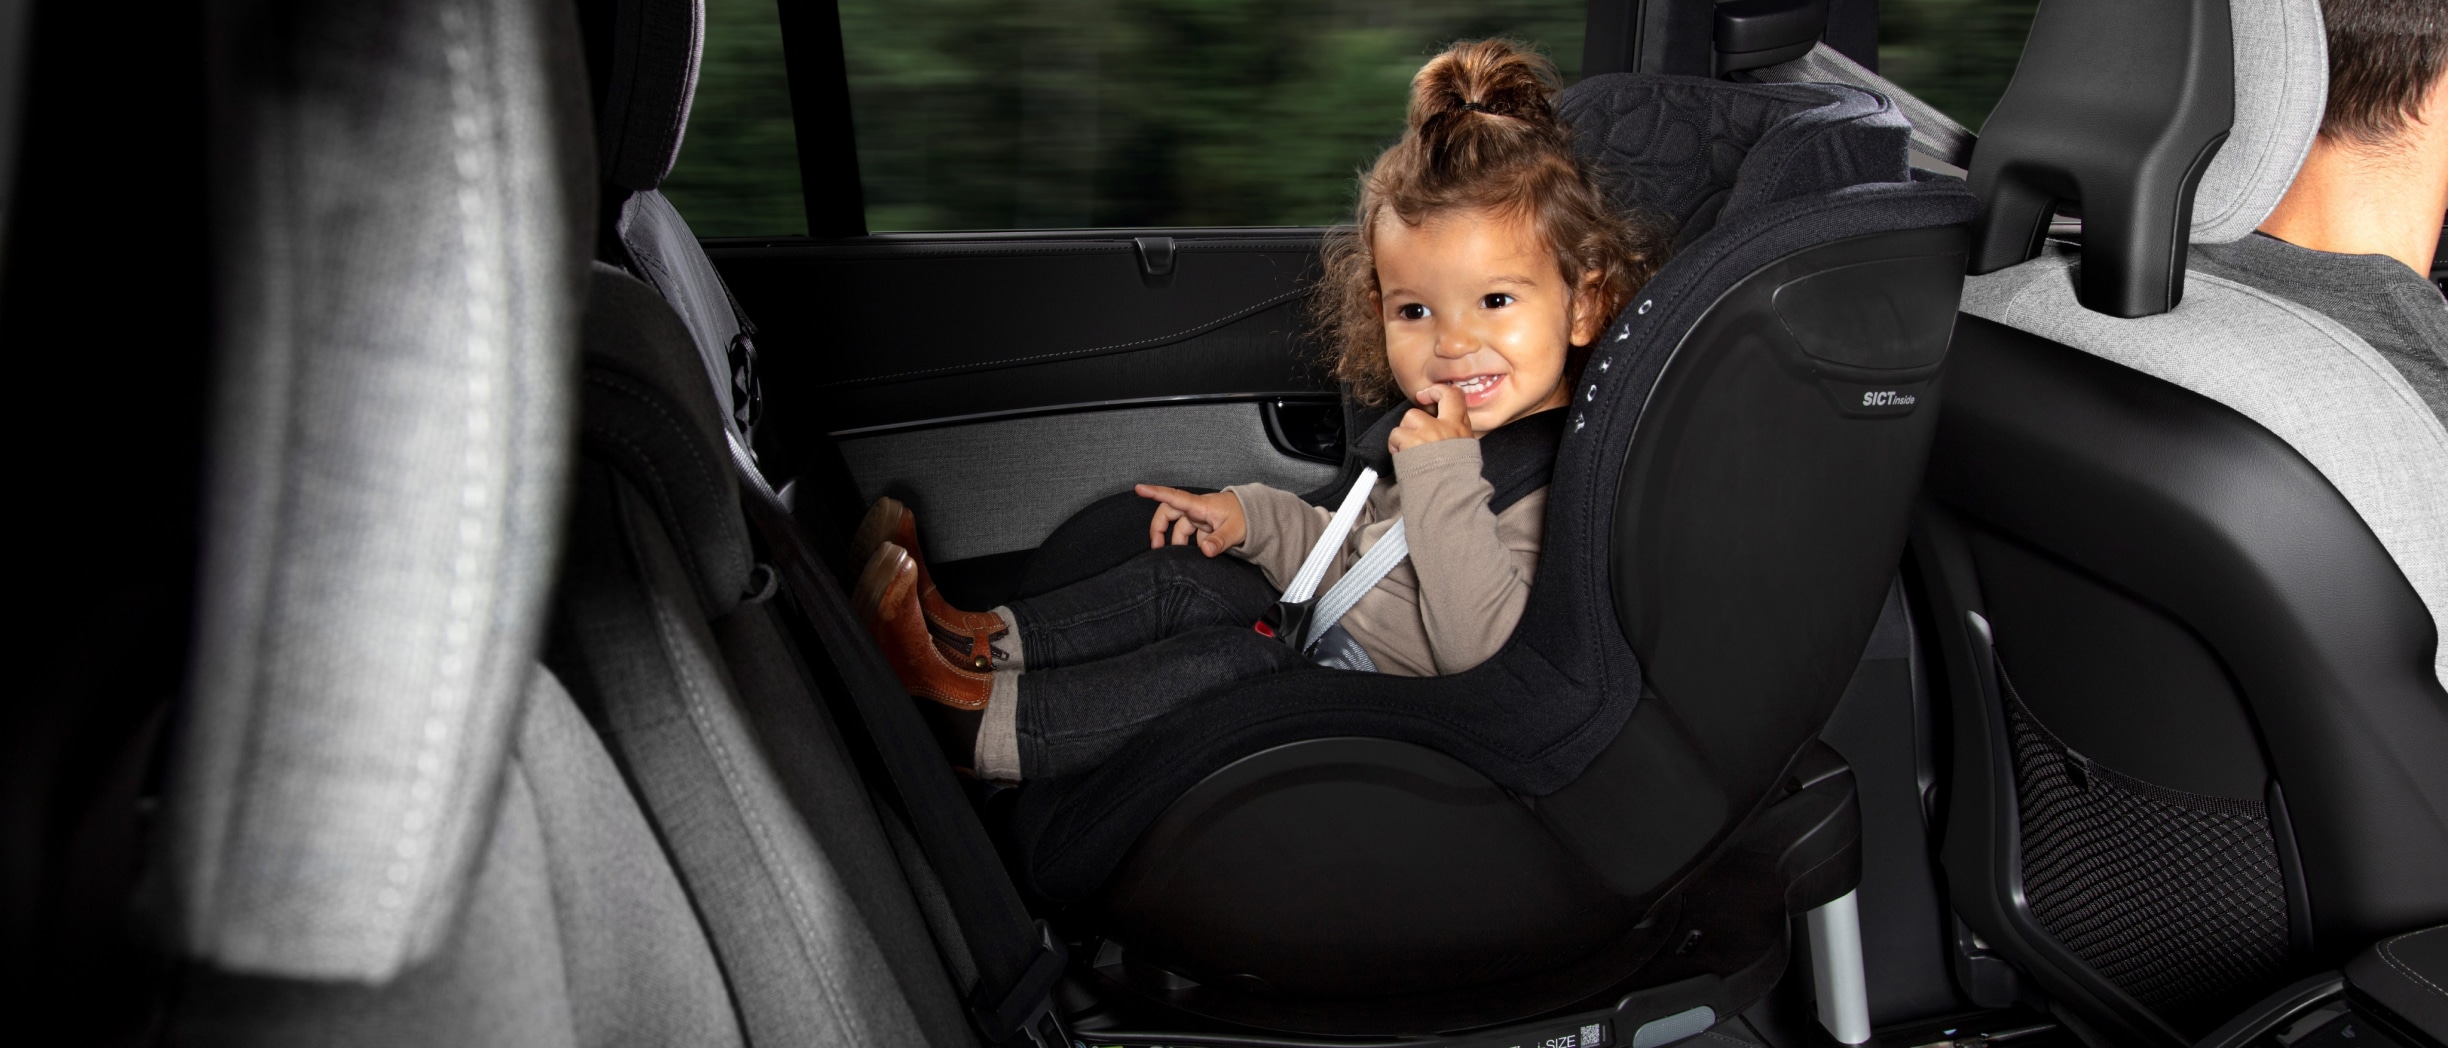 一名儿童在汽车座椅上微笑。